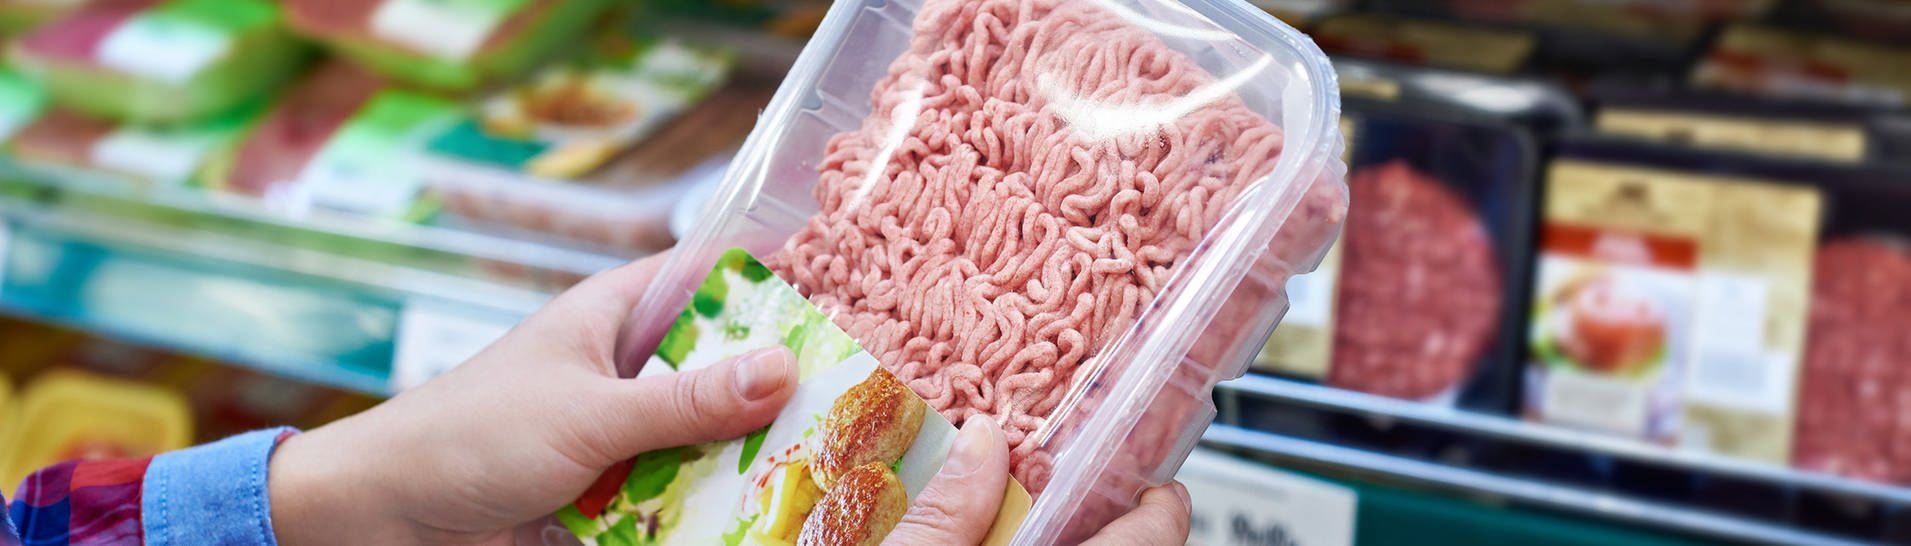 Verpacktes Hackfleisch im Supermarktregal: Wie kann mann erkennen, wo das verarbeitete Tier eigentlich geschlachtet wurde?